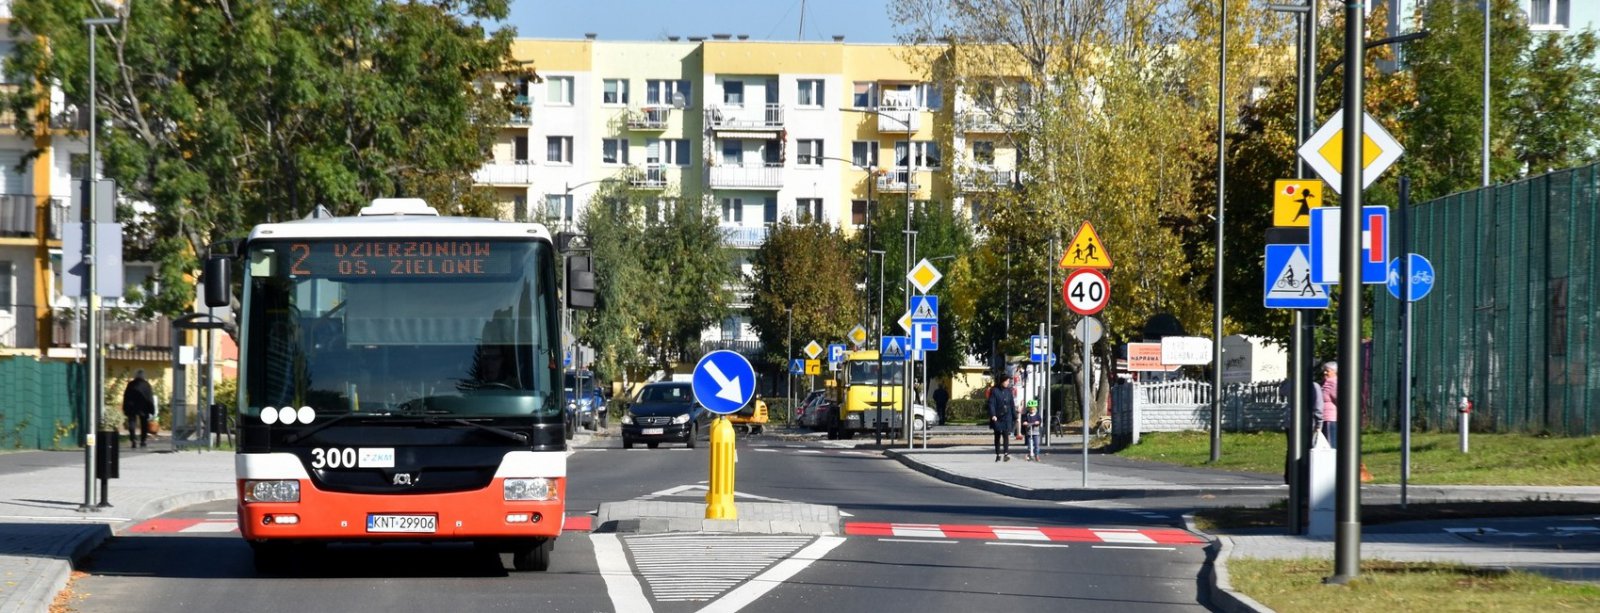 Autobus komunikacji miejskiej na osiedlowej drodze, przed nim czerwono-białe przejście dla pieszych